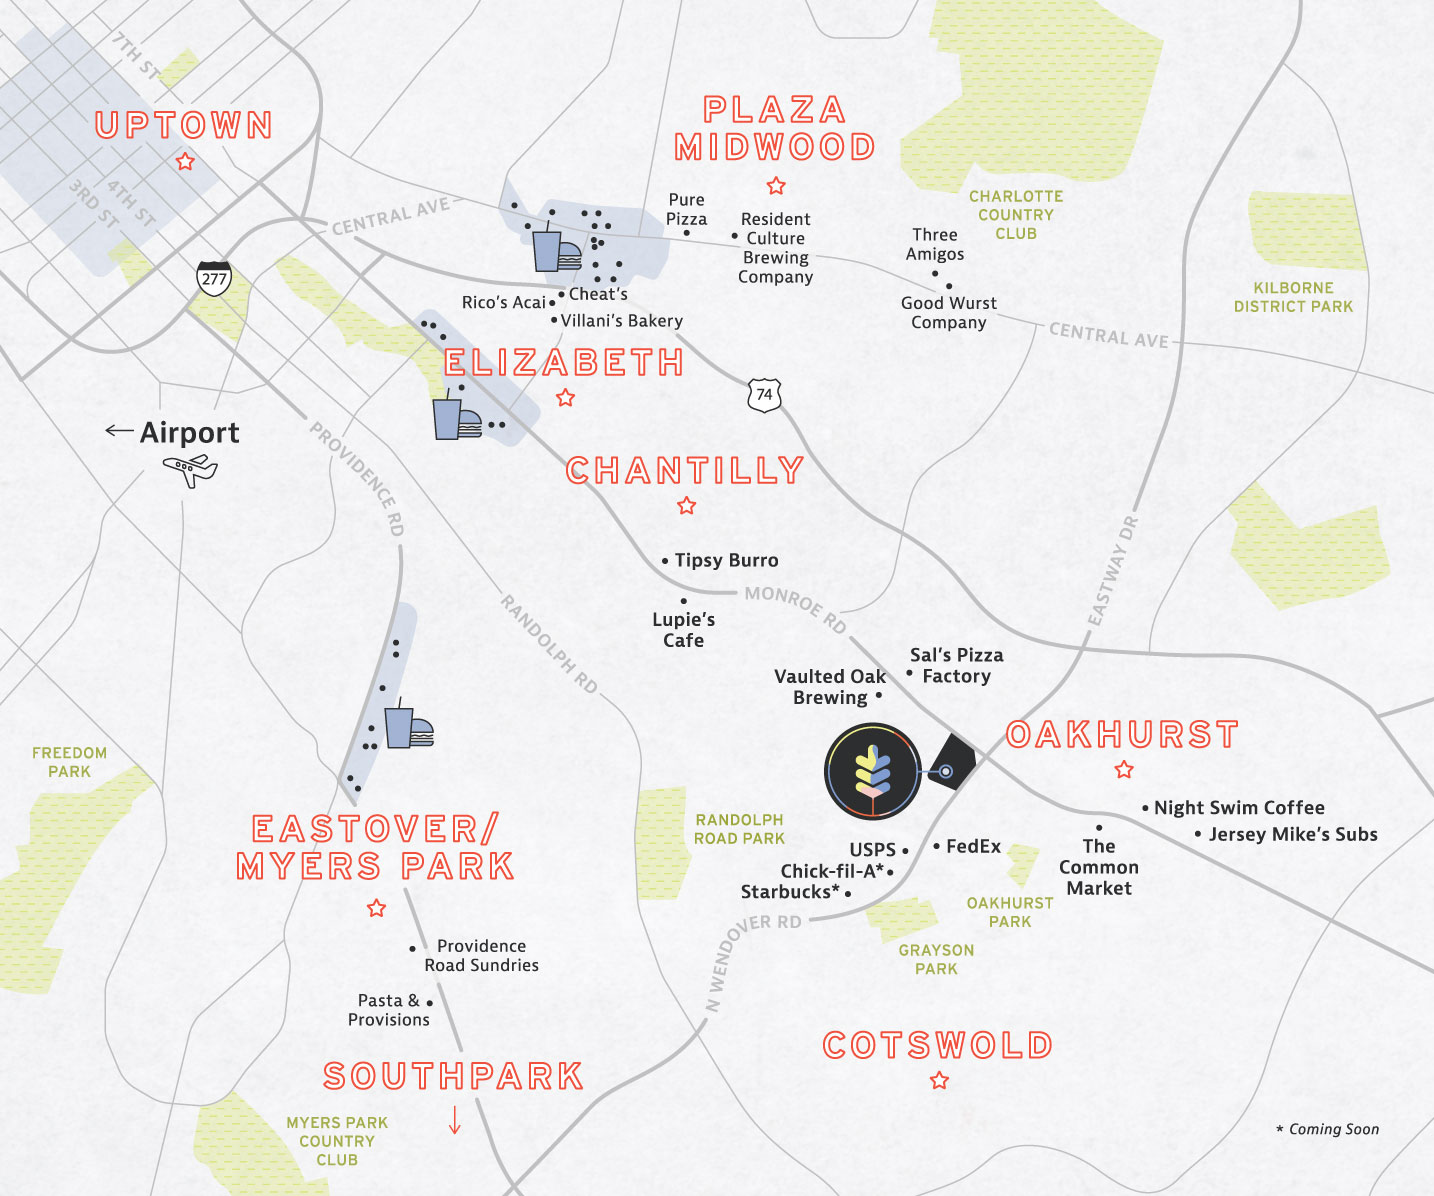 Oakhurst Commons Location Map